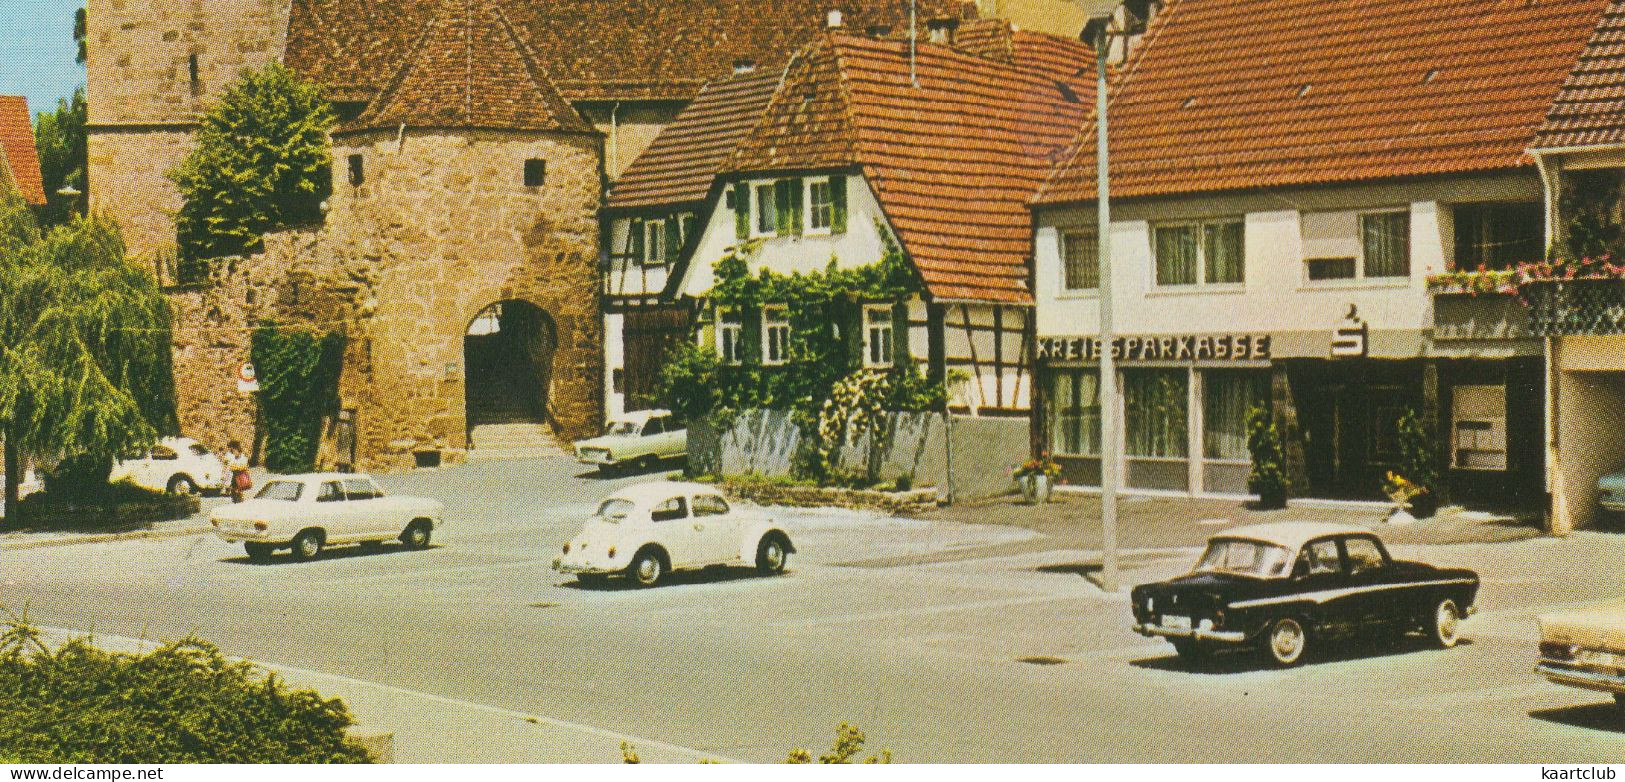 Beutelsbach: SIMCA ARONDE MONACO, VW 1200 KÄFER/COX, OPEL KADETT-B, DKW JUNIOR - Ev. Kirche - (Deutschland) - Passenger Cars